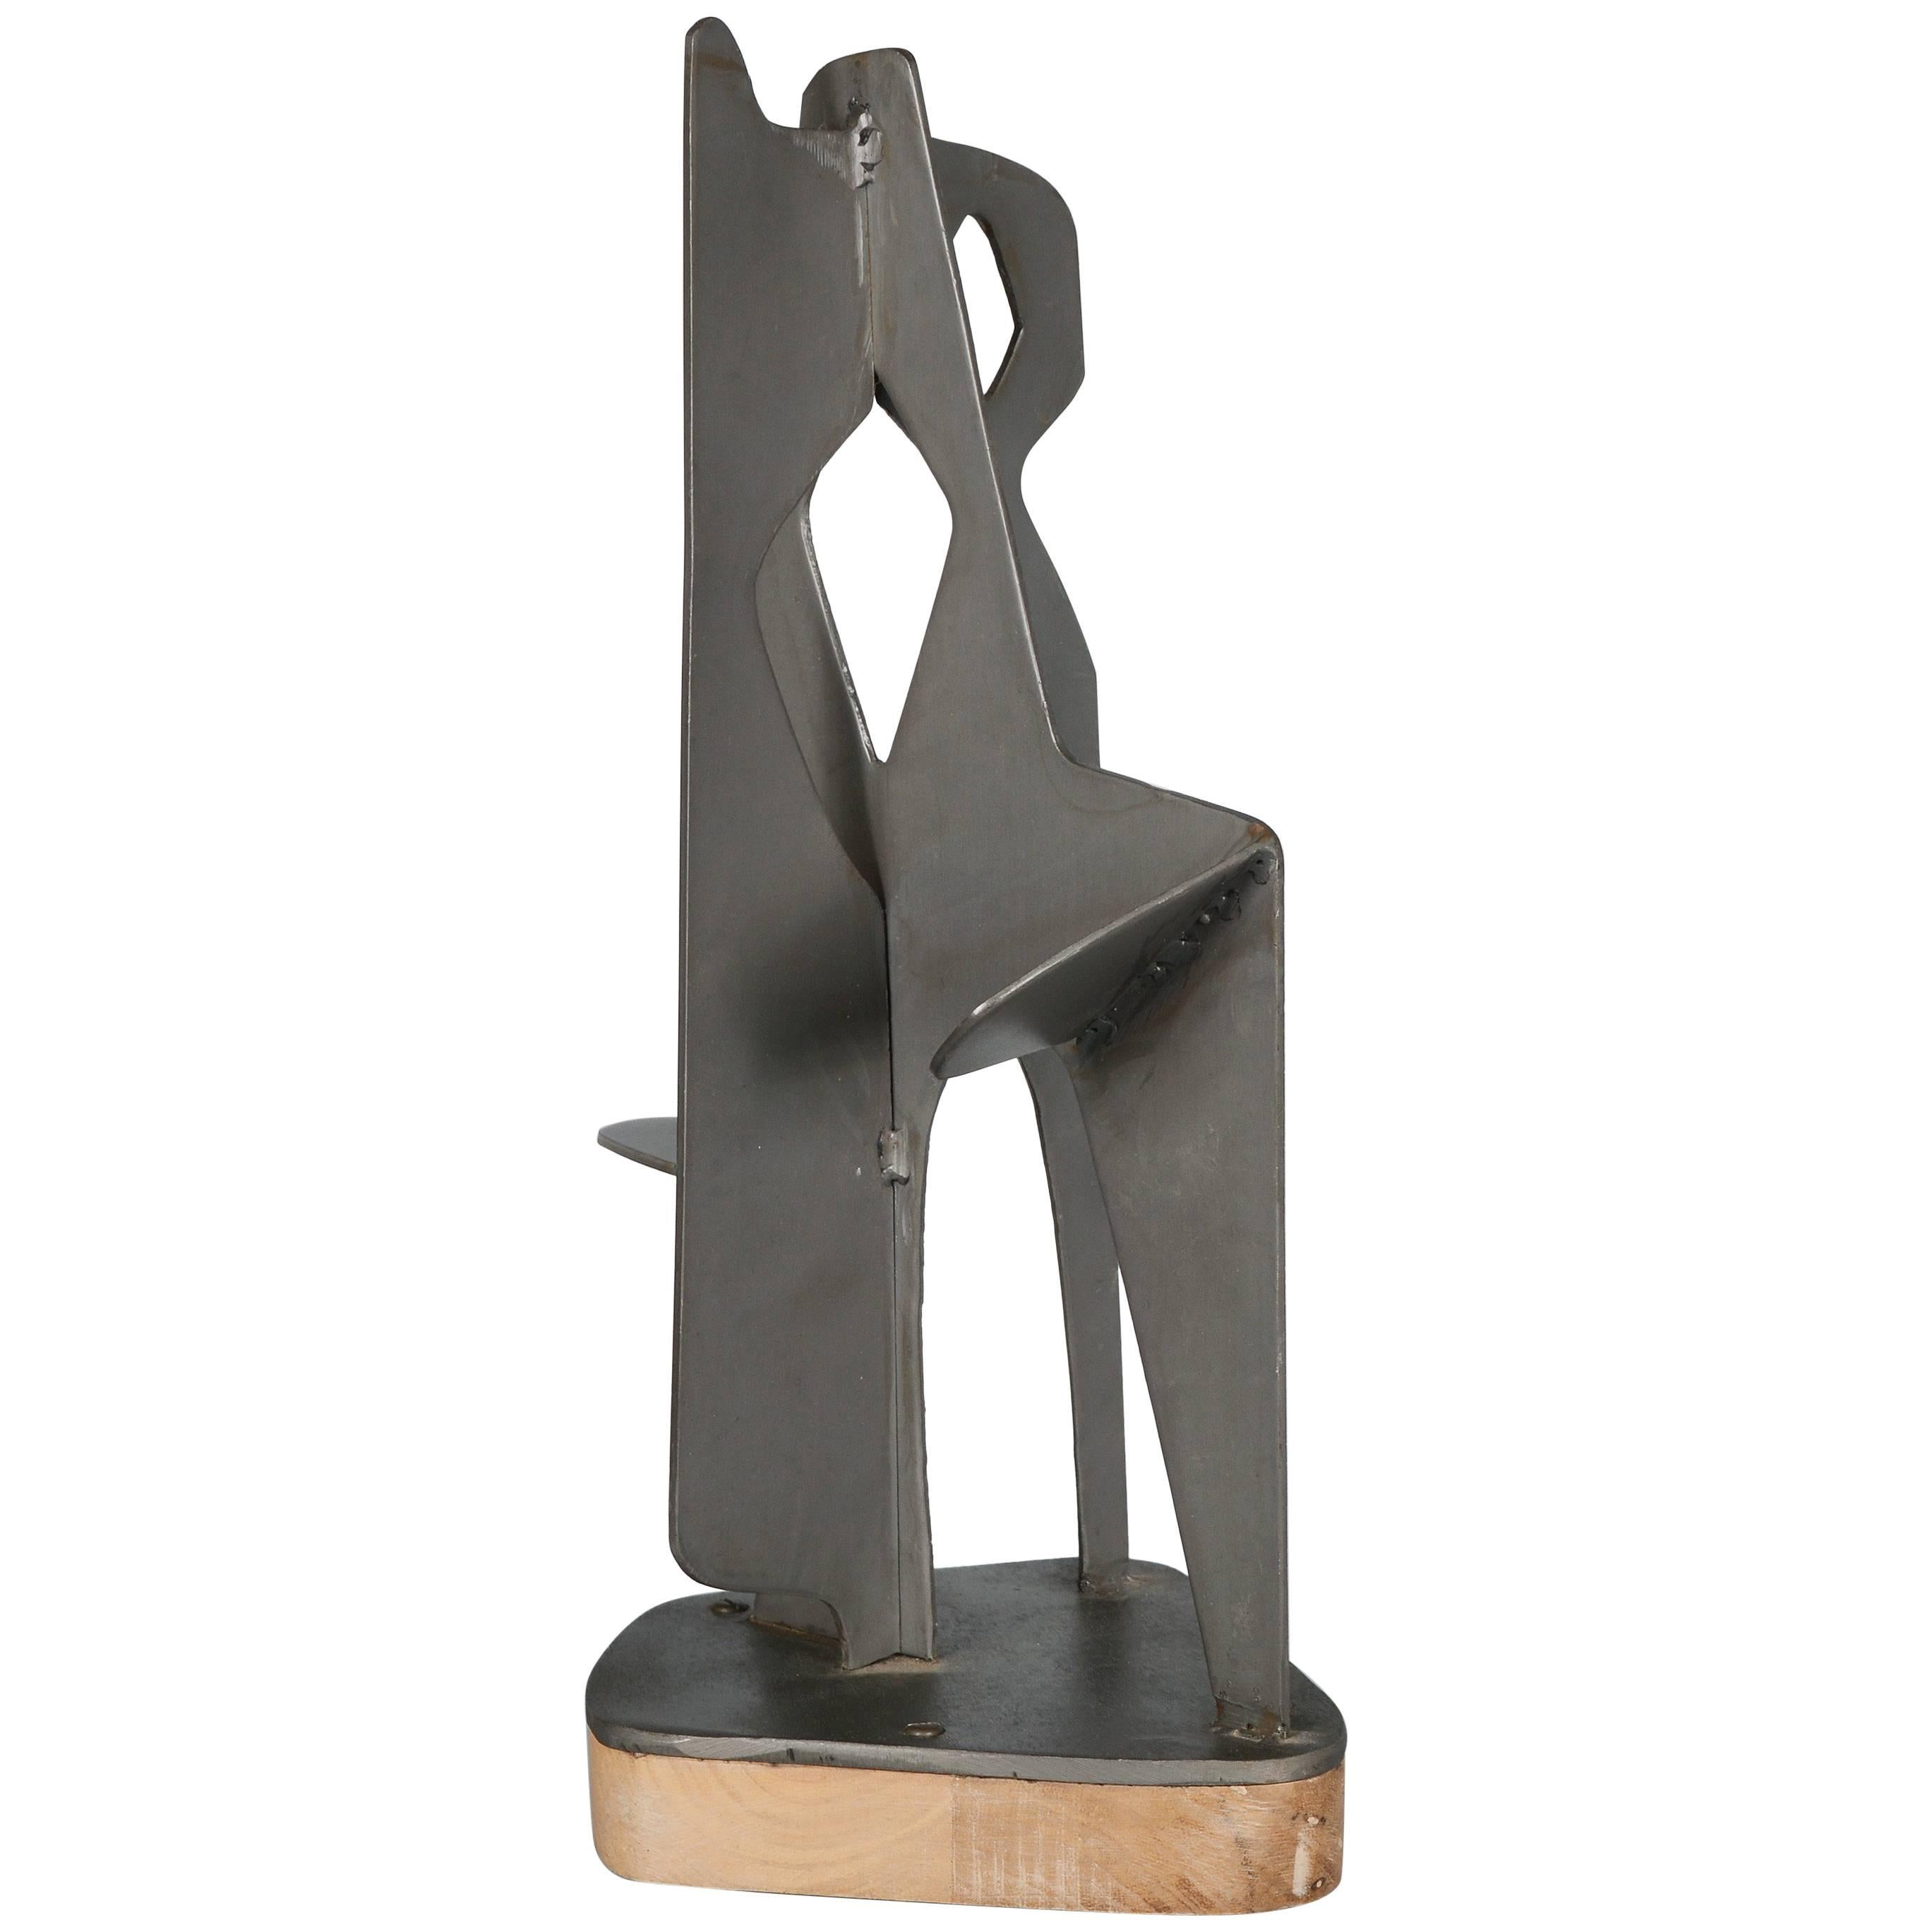 Modernist Abstract Steel Sculpture